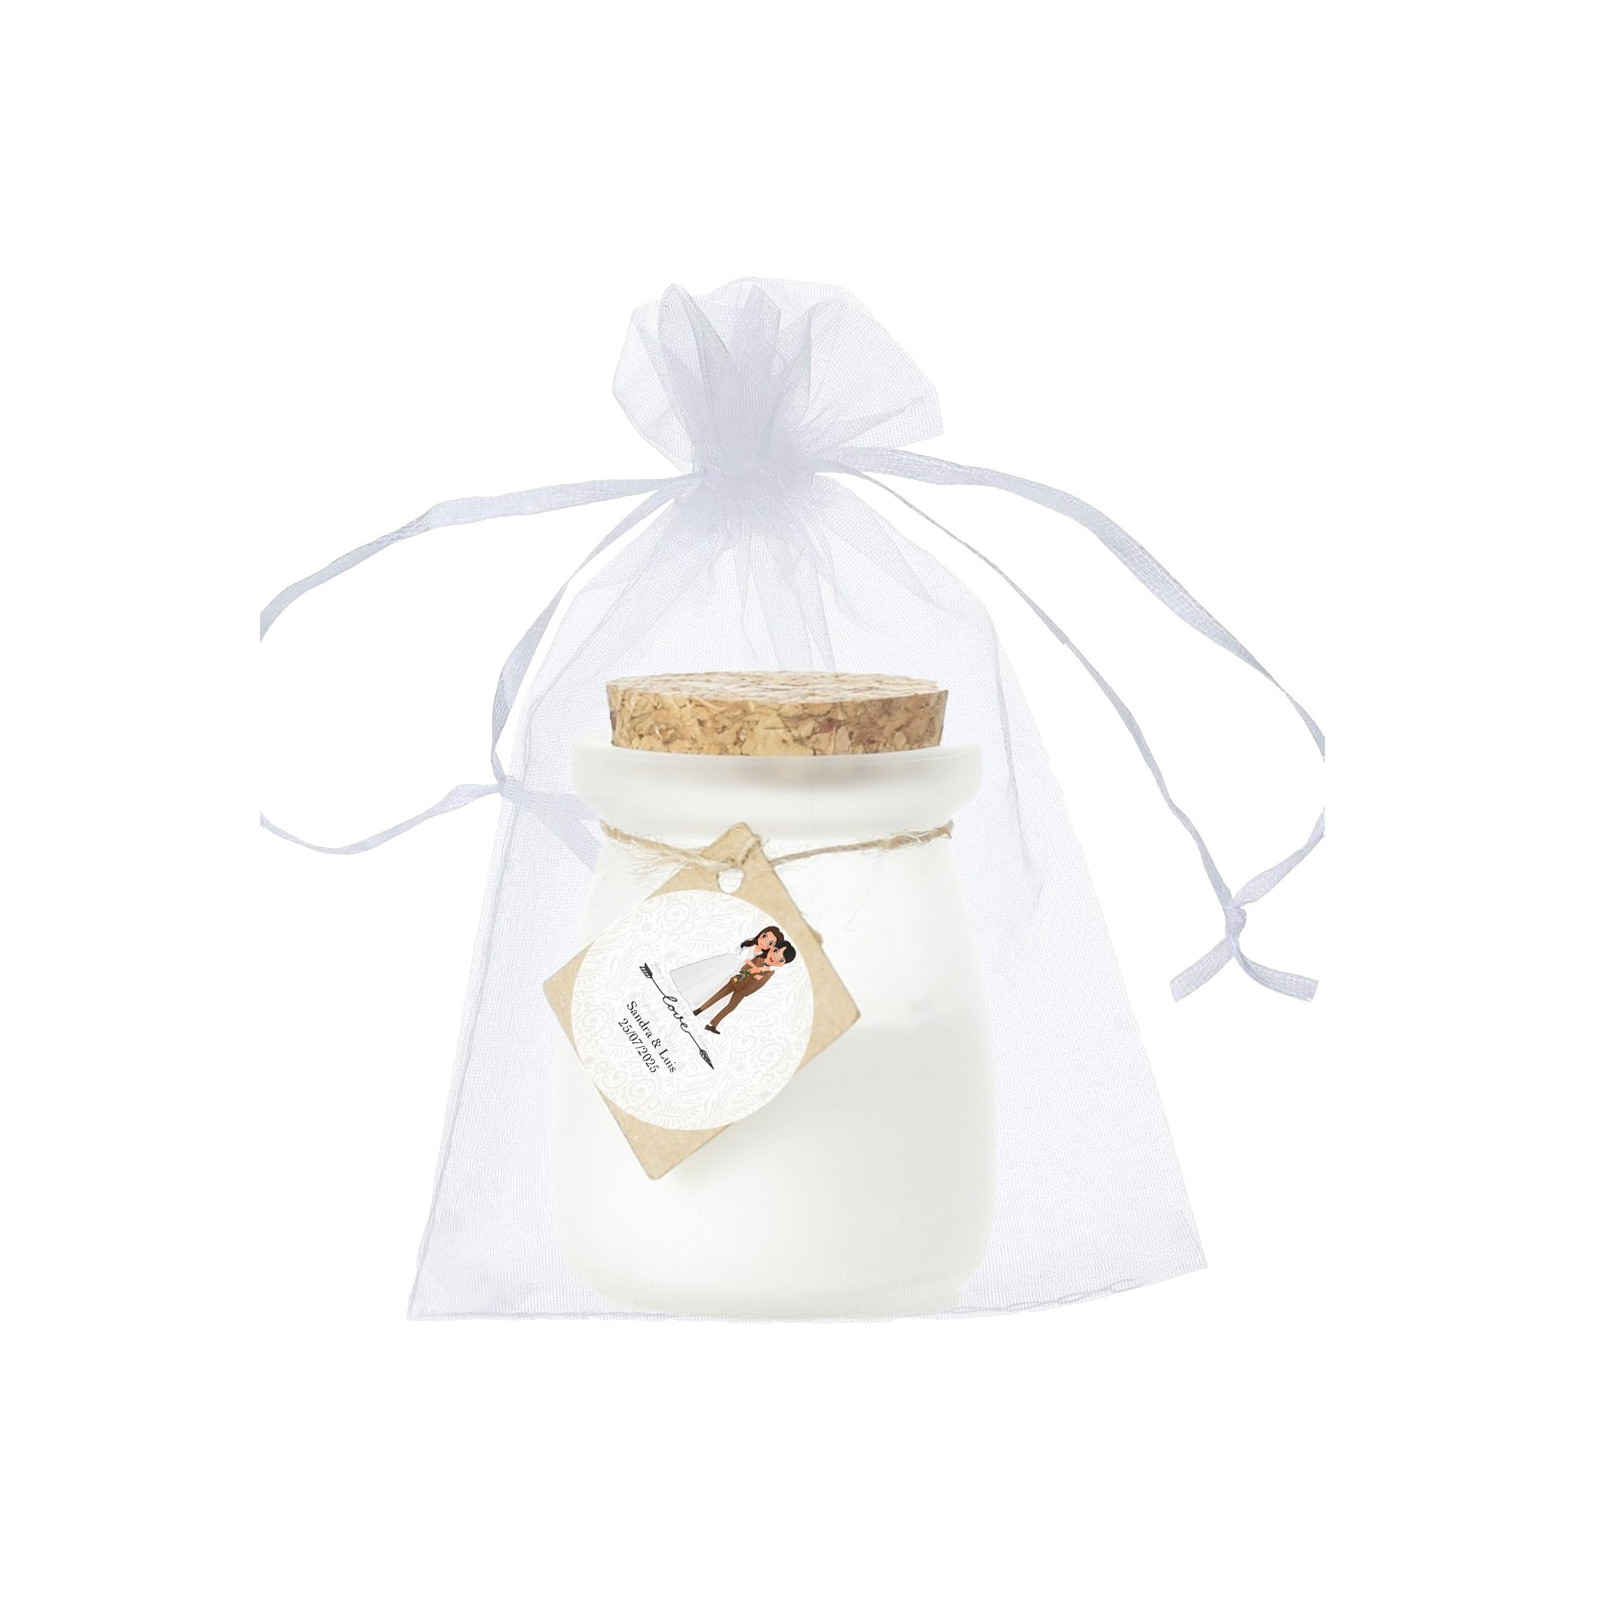 Vela perfumada de baunilha personalizada com noiva e noivo adesivo em bolsa de organza branca